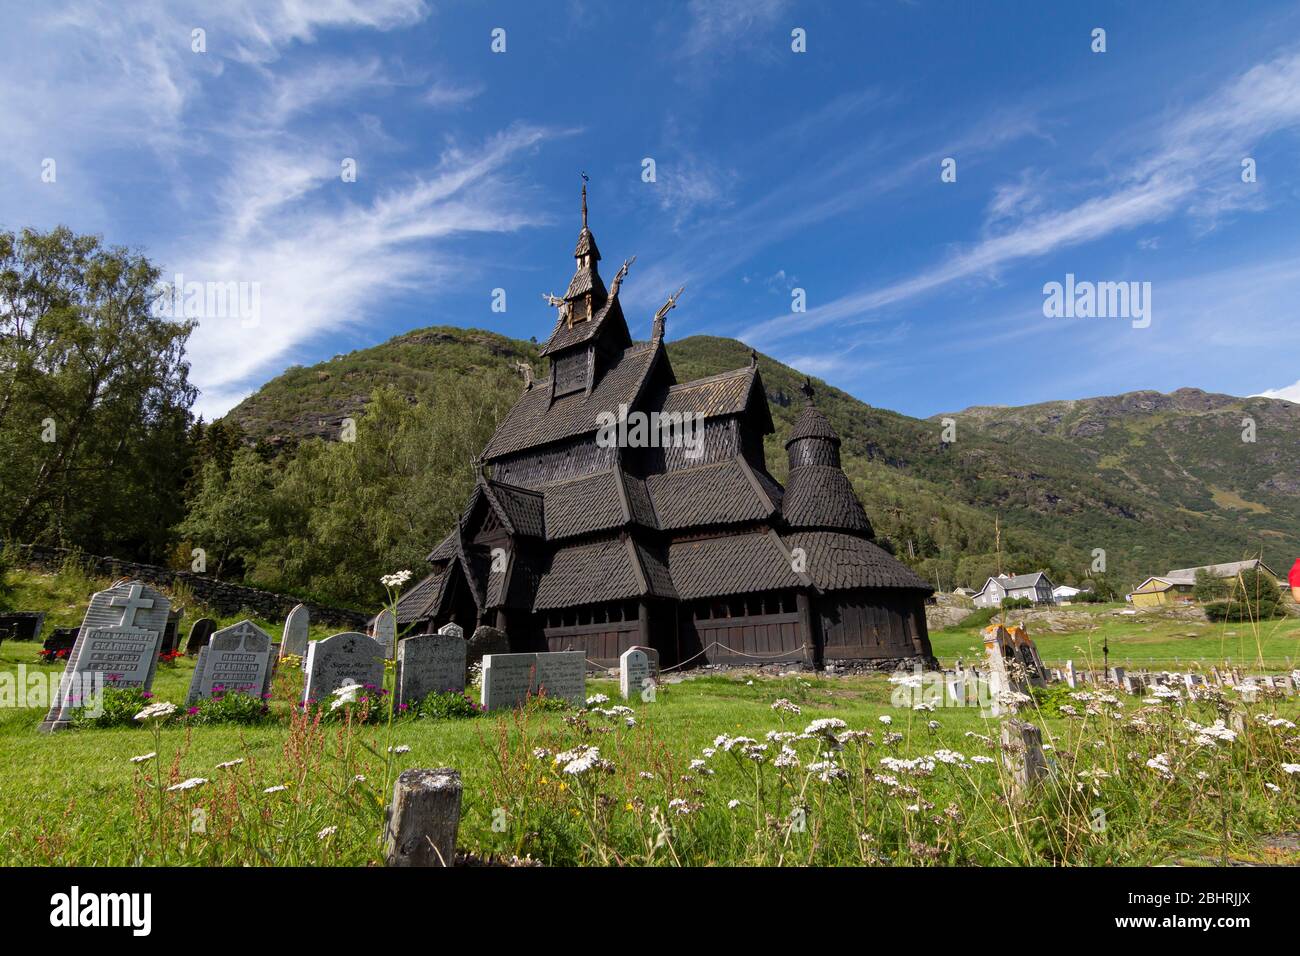 Old Borgund Stave Church in Laerdal, Norway, built around 1200 Stock Photo